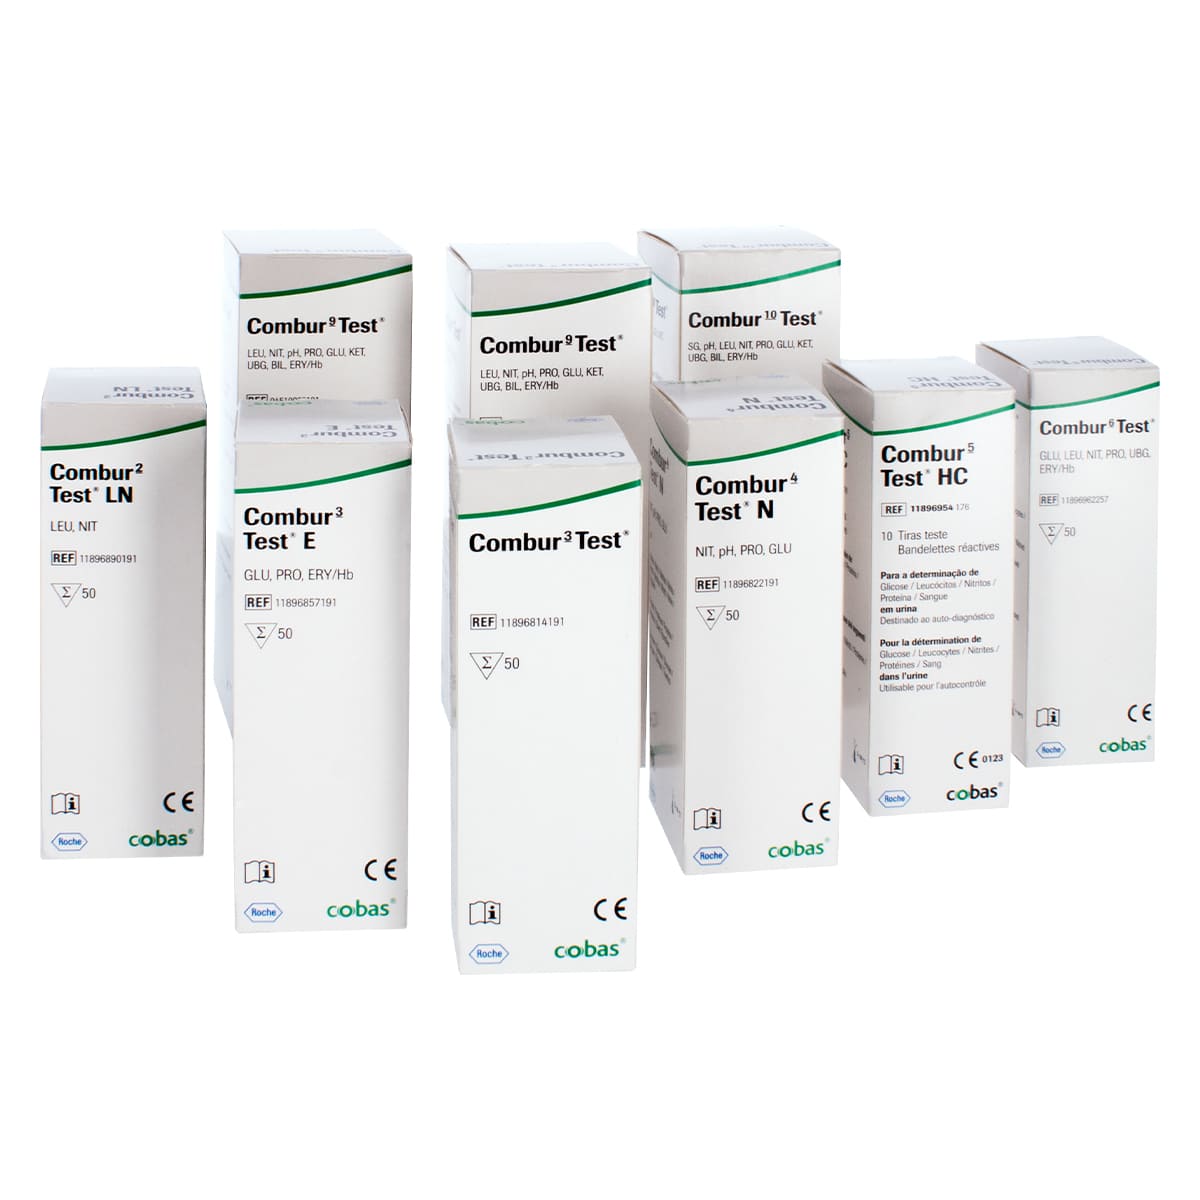 Bandelette urinaire Roche Combur Test® 3E, boîte de 50 - Bandelette urinaire  Combur Test® - Diagnostic urinaire - Bandelette et kit de diagnostic  médical - Produit chimique, colorant et réactif - Produits